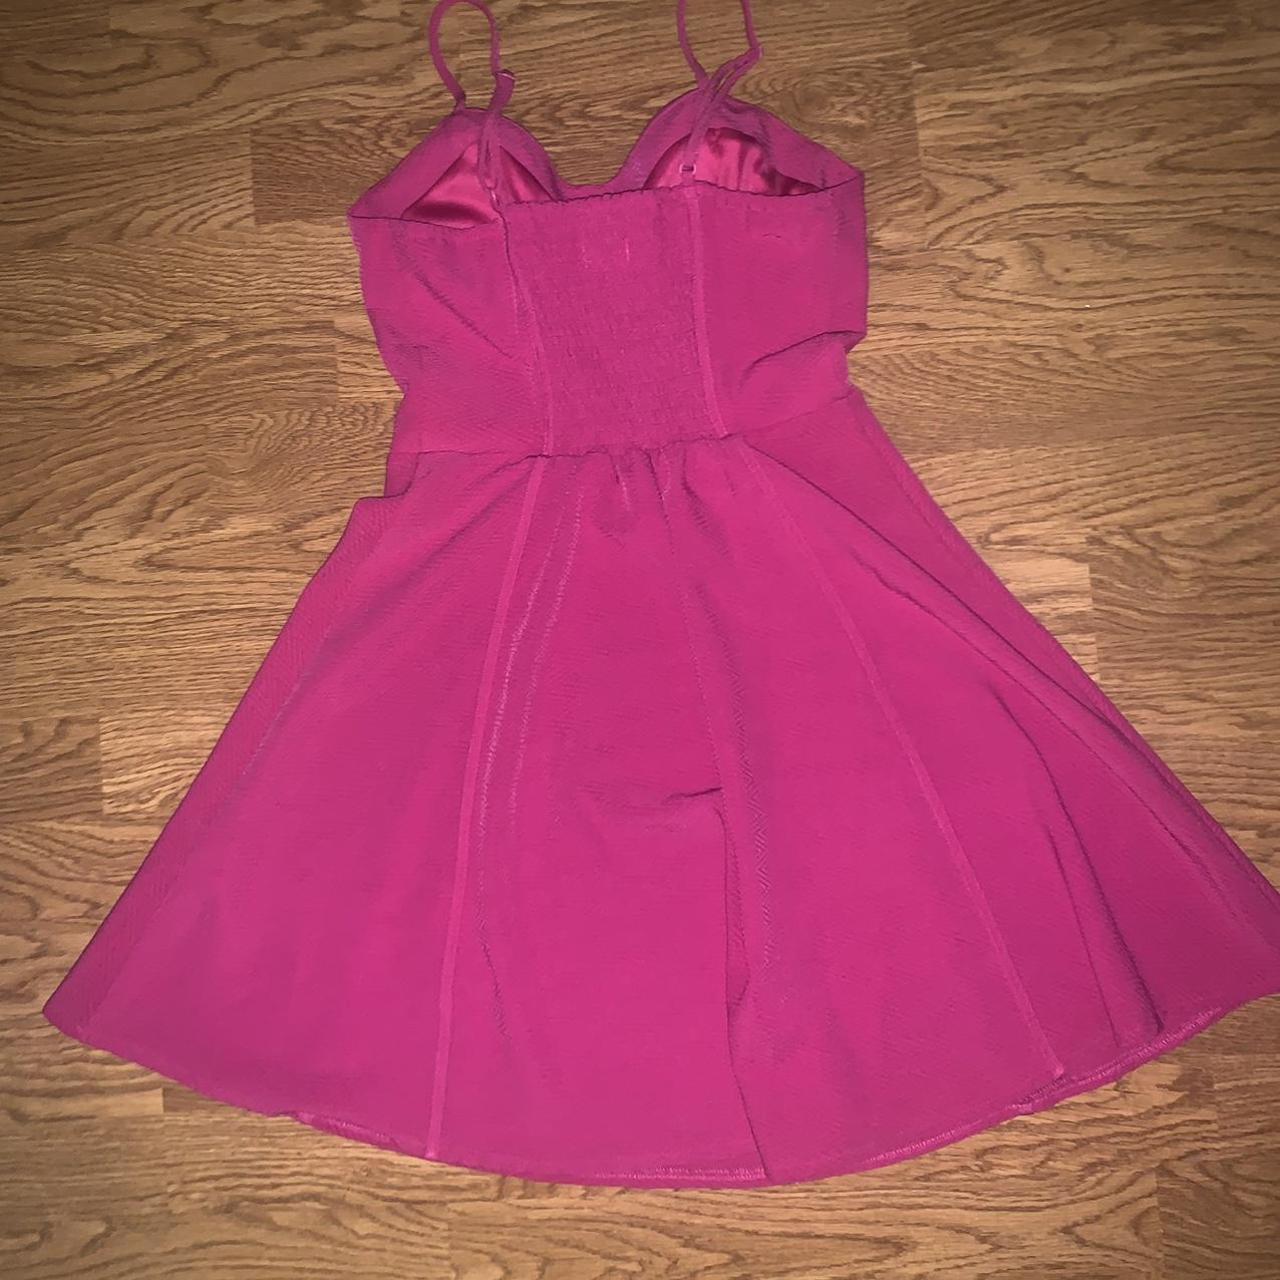 Hot pink A line dress I am 5'4